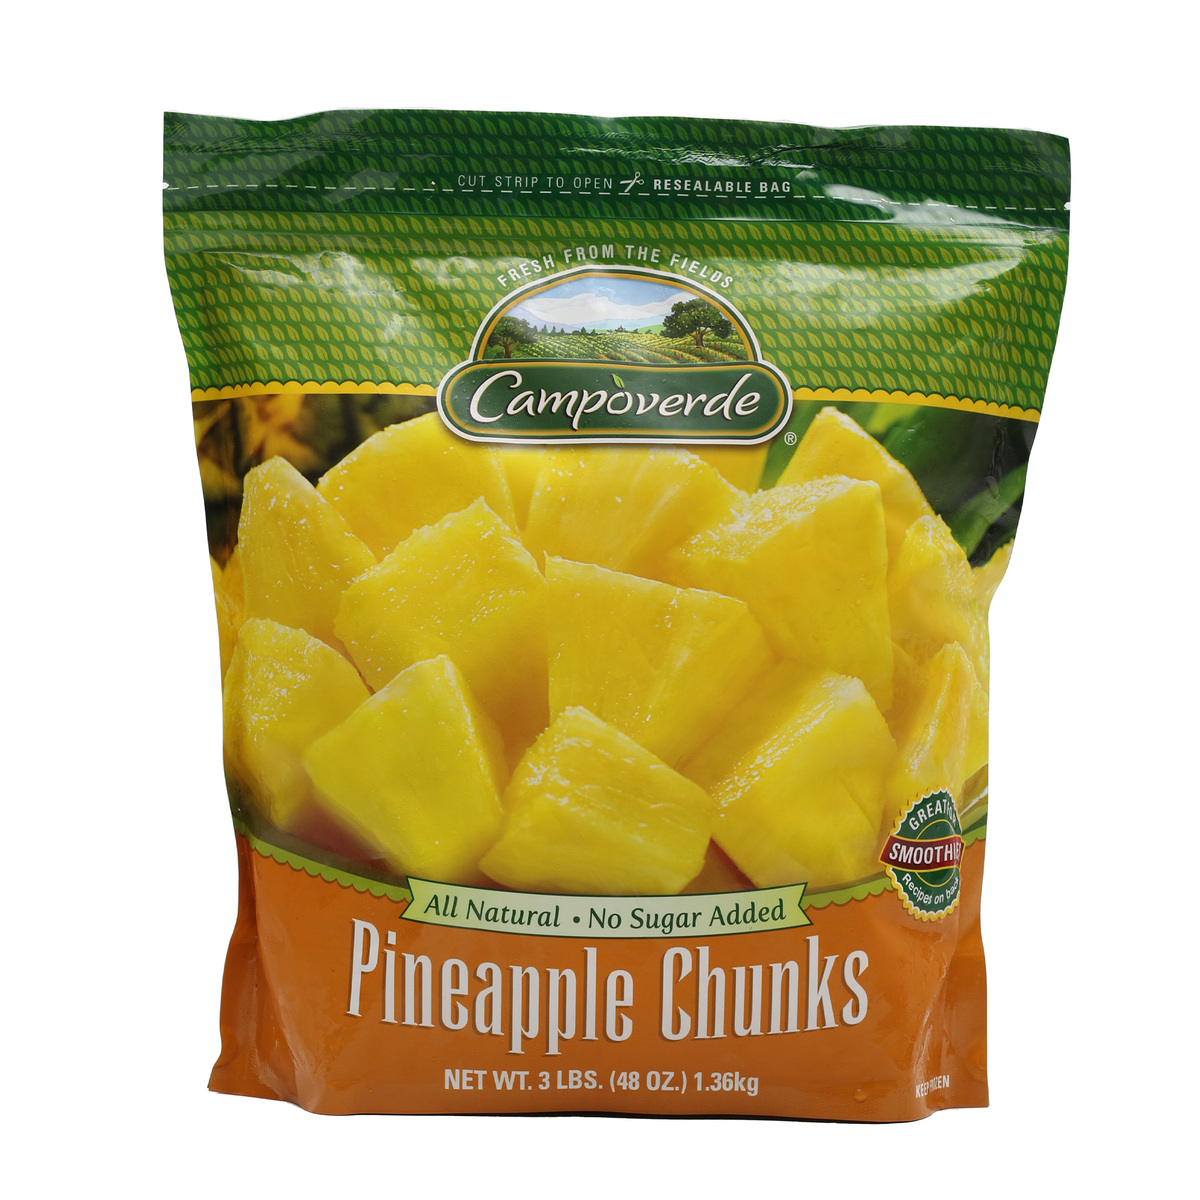 Campoverde Pineapple Chunks 1.36kg